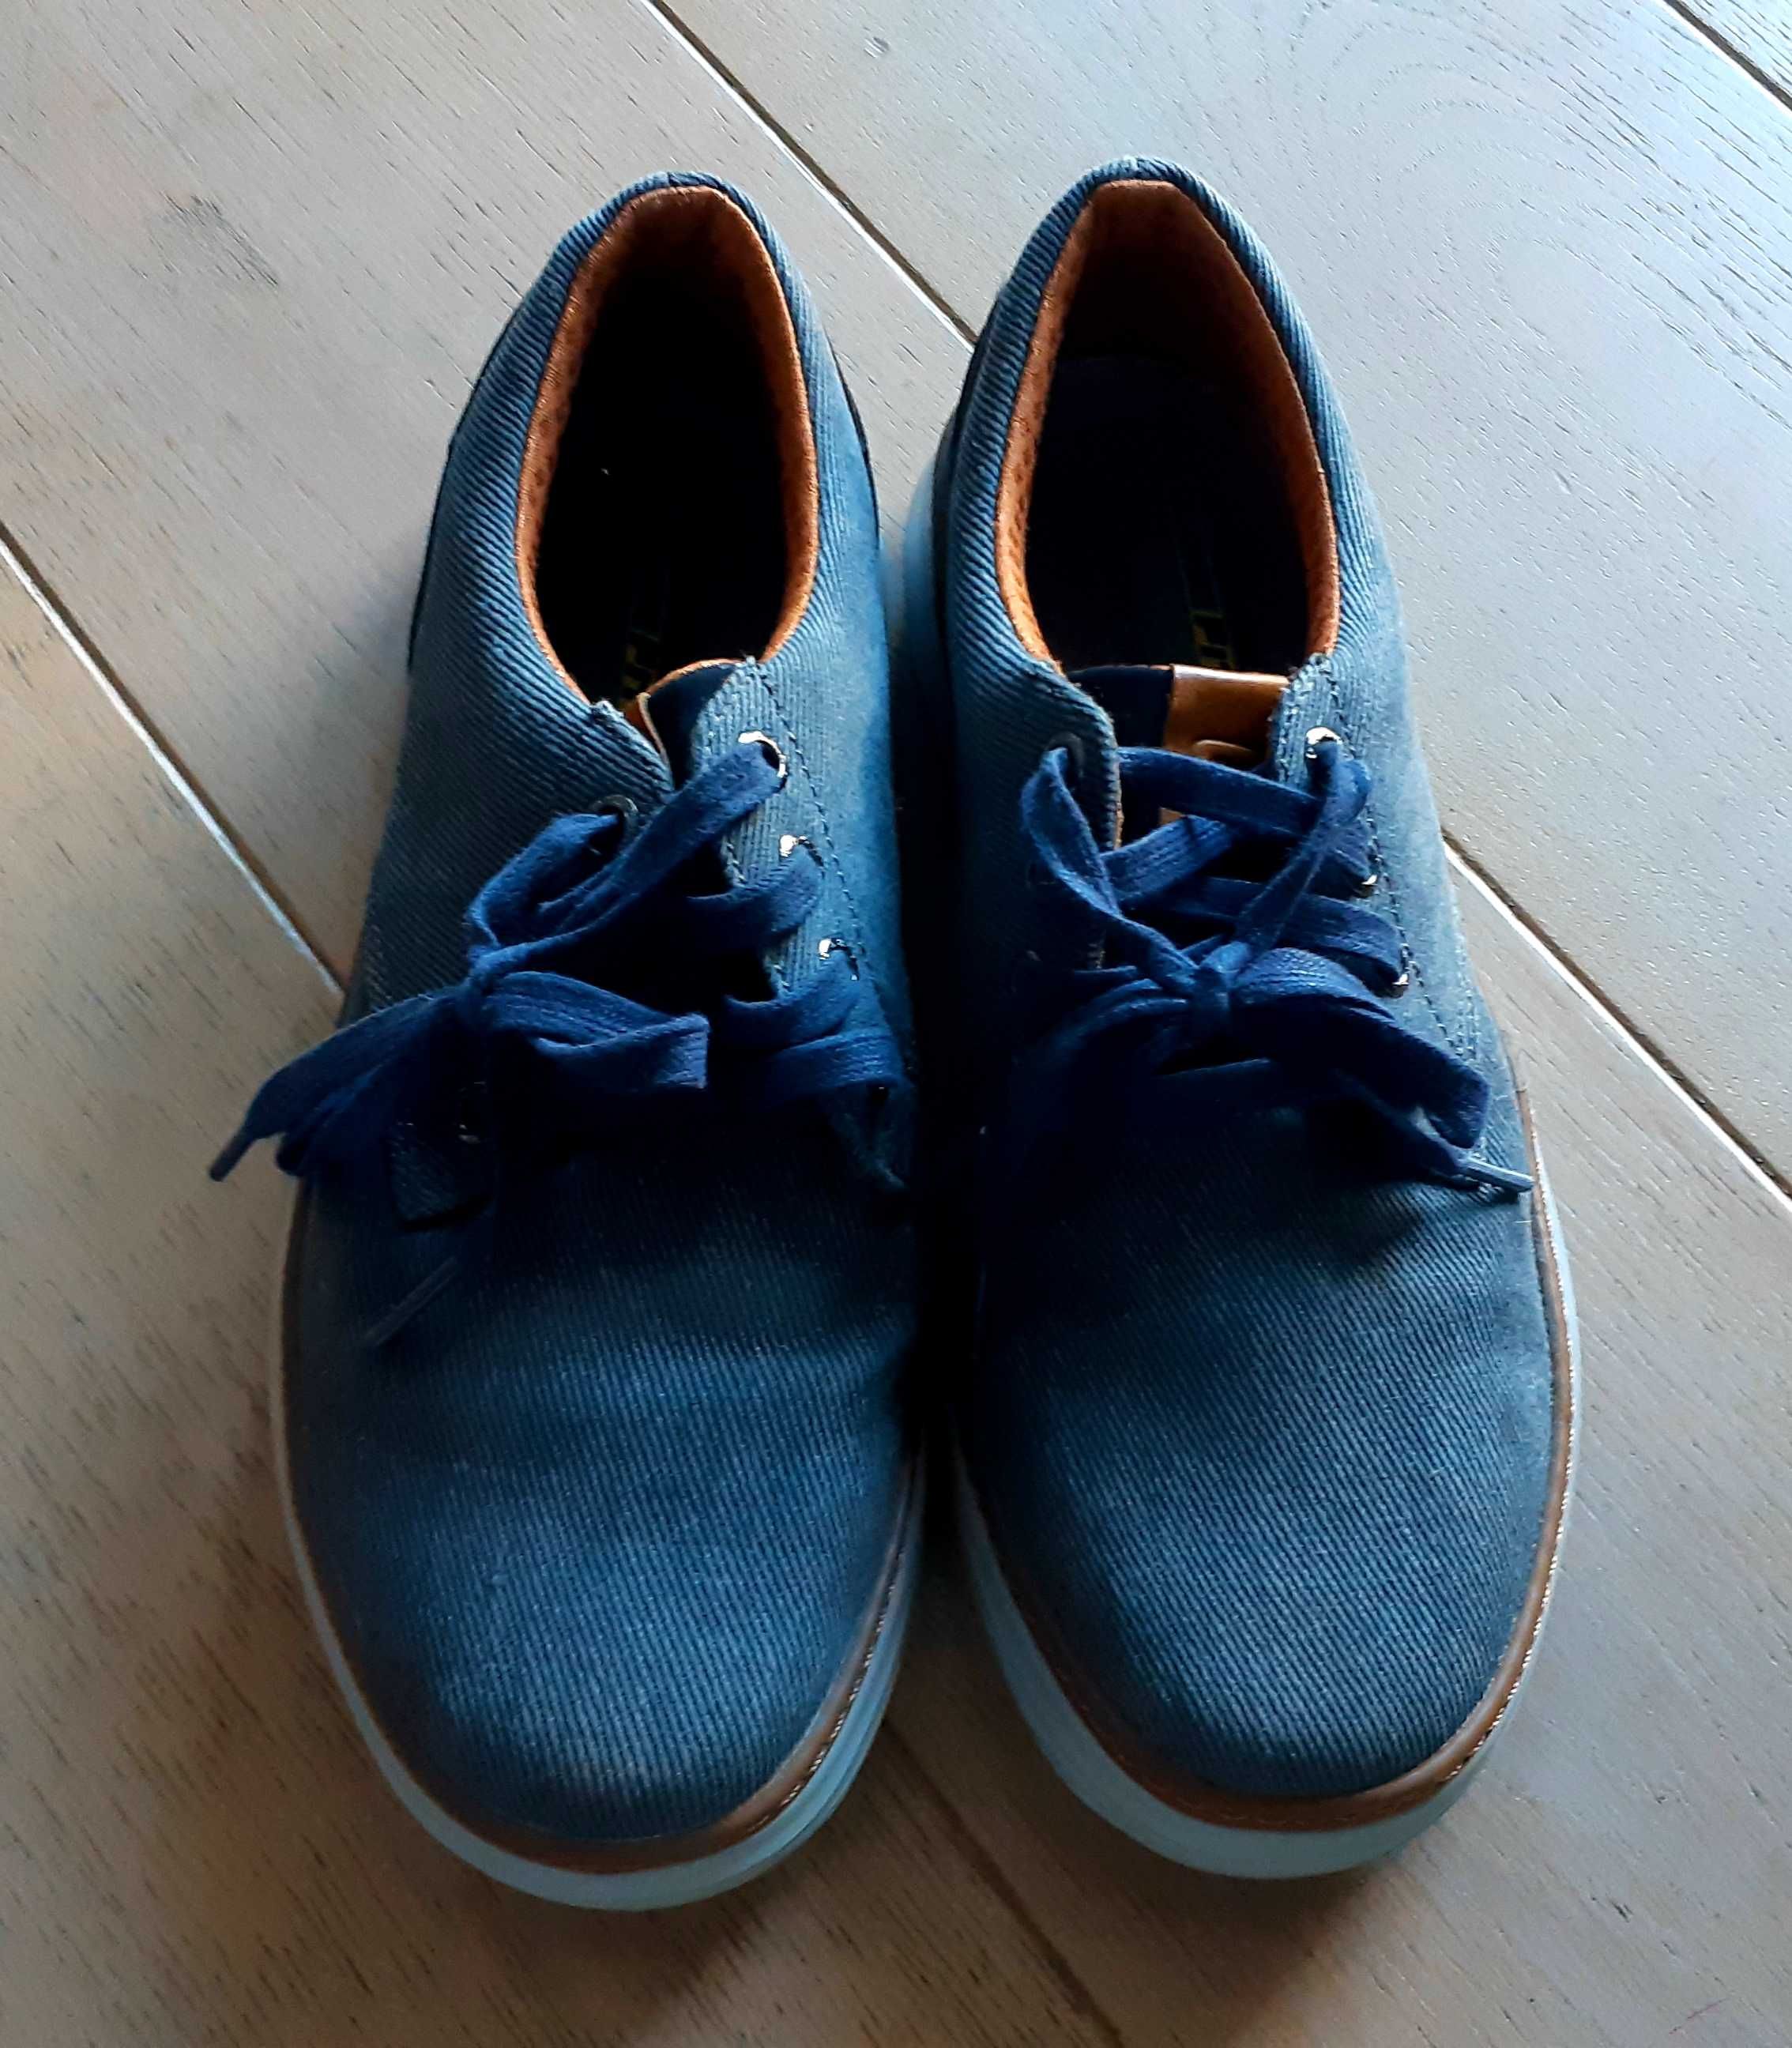 nowe buty męskie dla chłopca SKETCHERS 40 25,5 cm lekkie